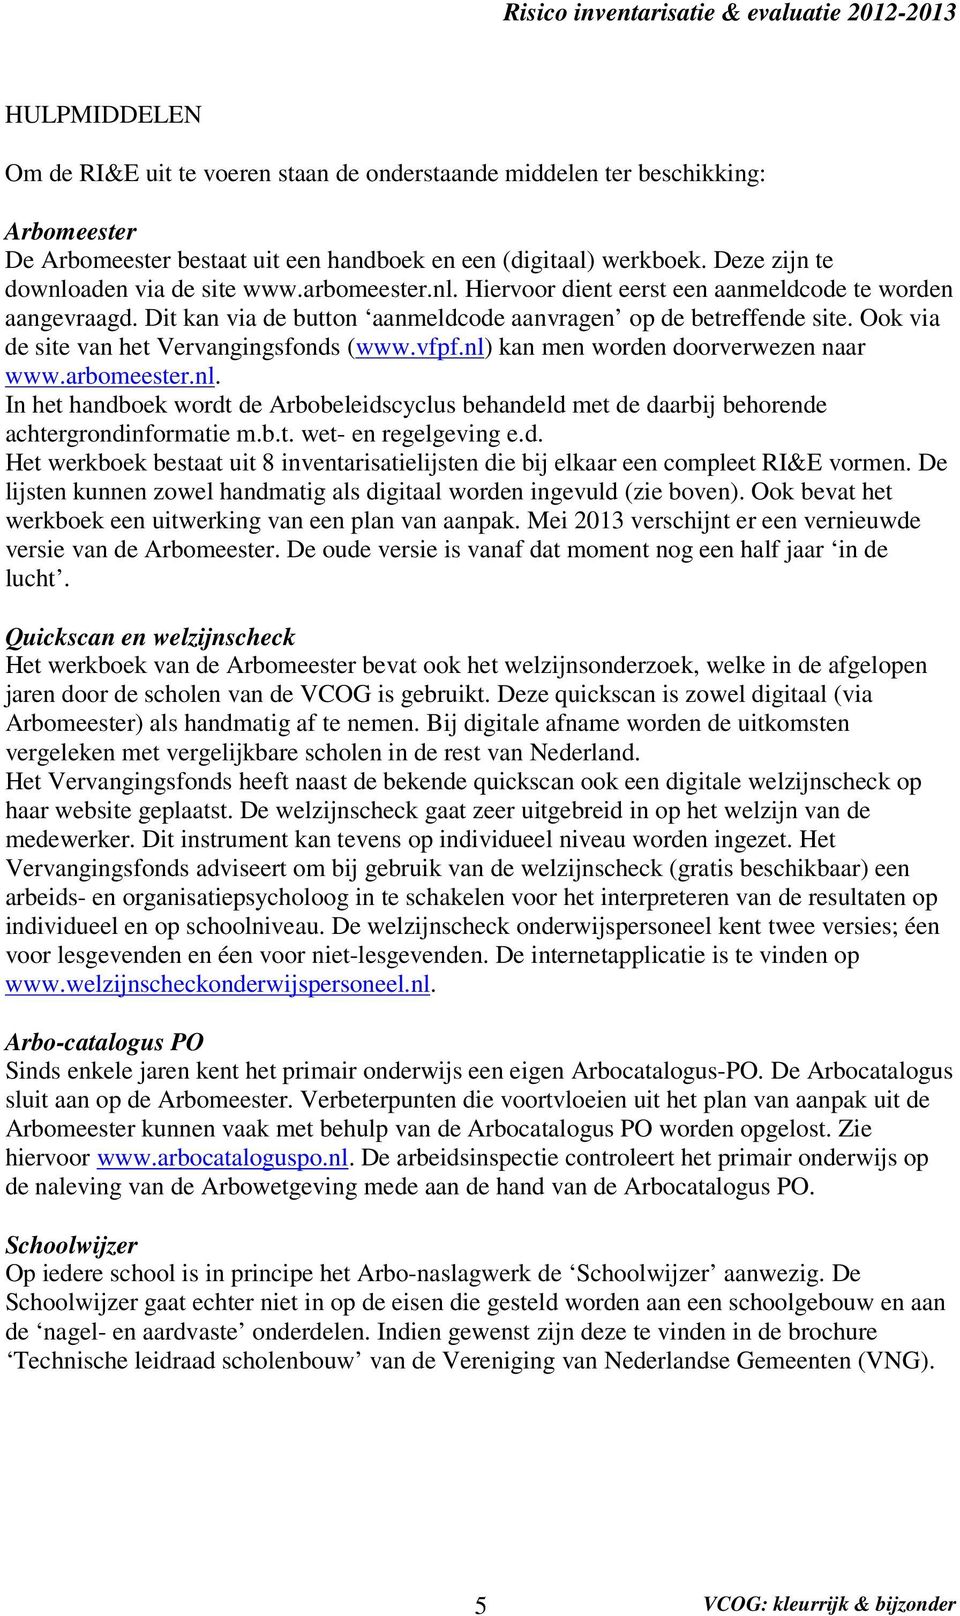 Ook via de site van het Vervangingsfonds (www.vfpf.nl) kan men worden doorverwezen naar www.arbomeester.nl. In het handboek wordt de Arbobeleidscyclus behandeld met de daarbij behorende achtergrondinformatie m.